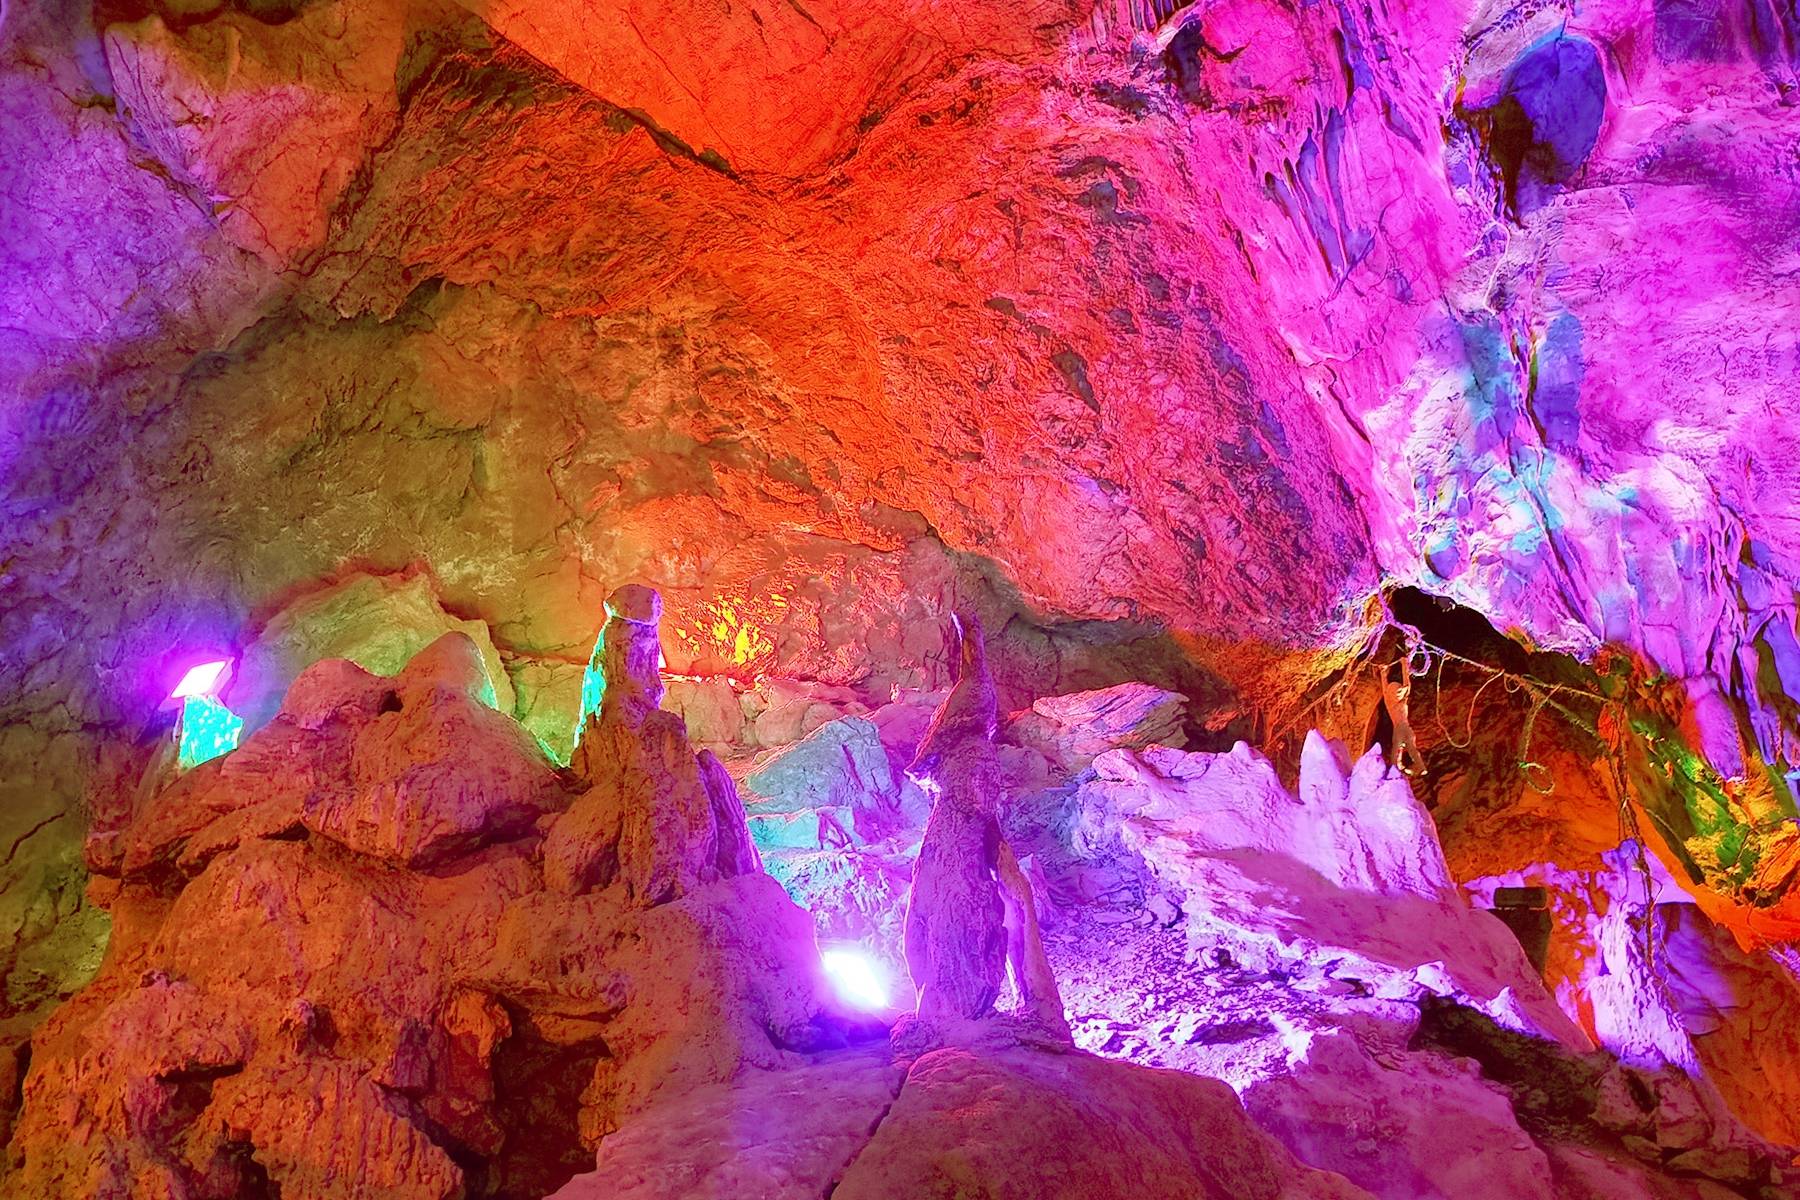 原创西安辋川溶洞,市民可免费观赏9000万年堆积的自然景观